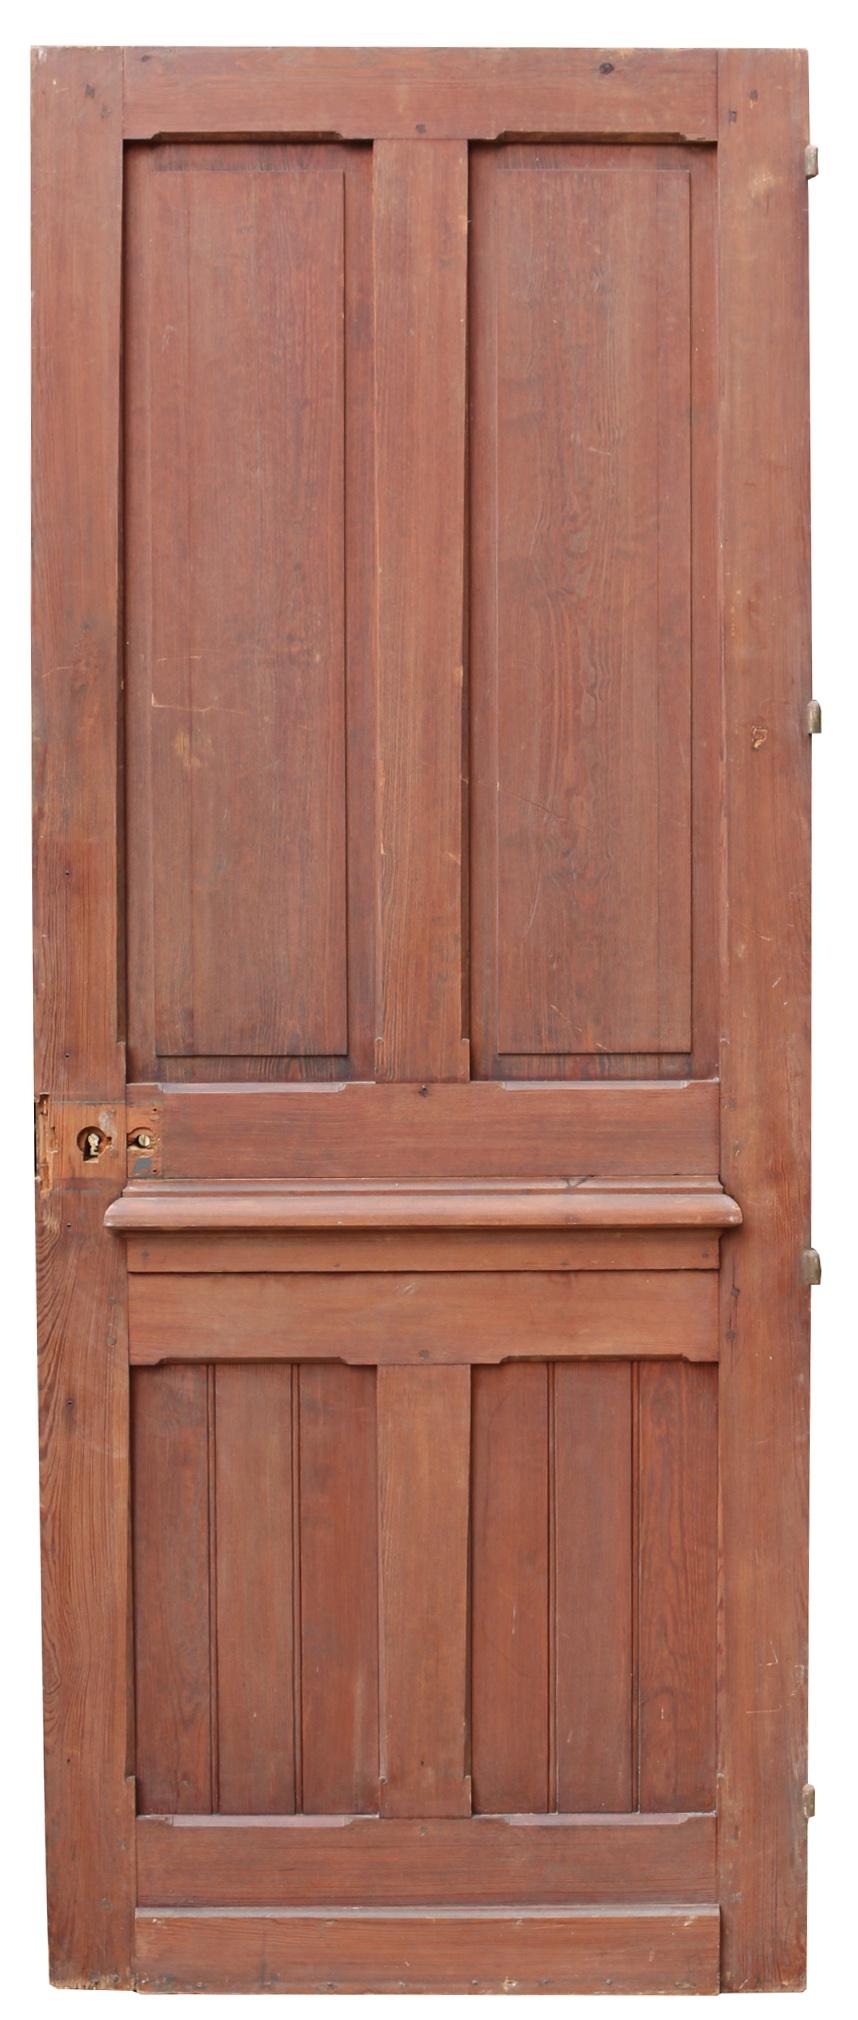 8 panel door exterior